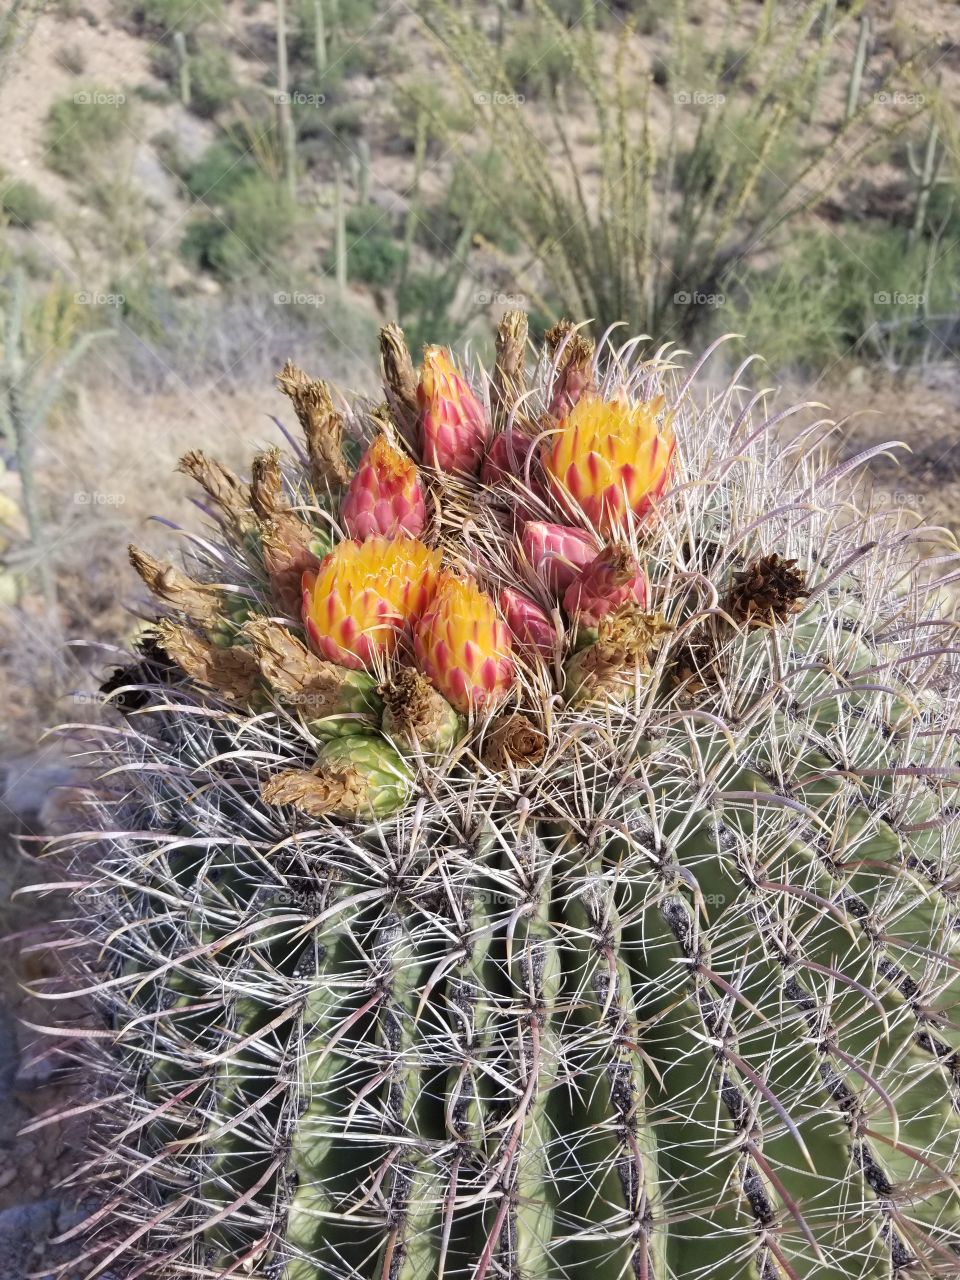 Barrel Cactus Blooms and Fruita